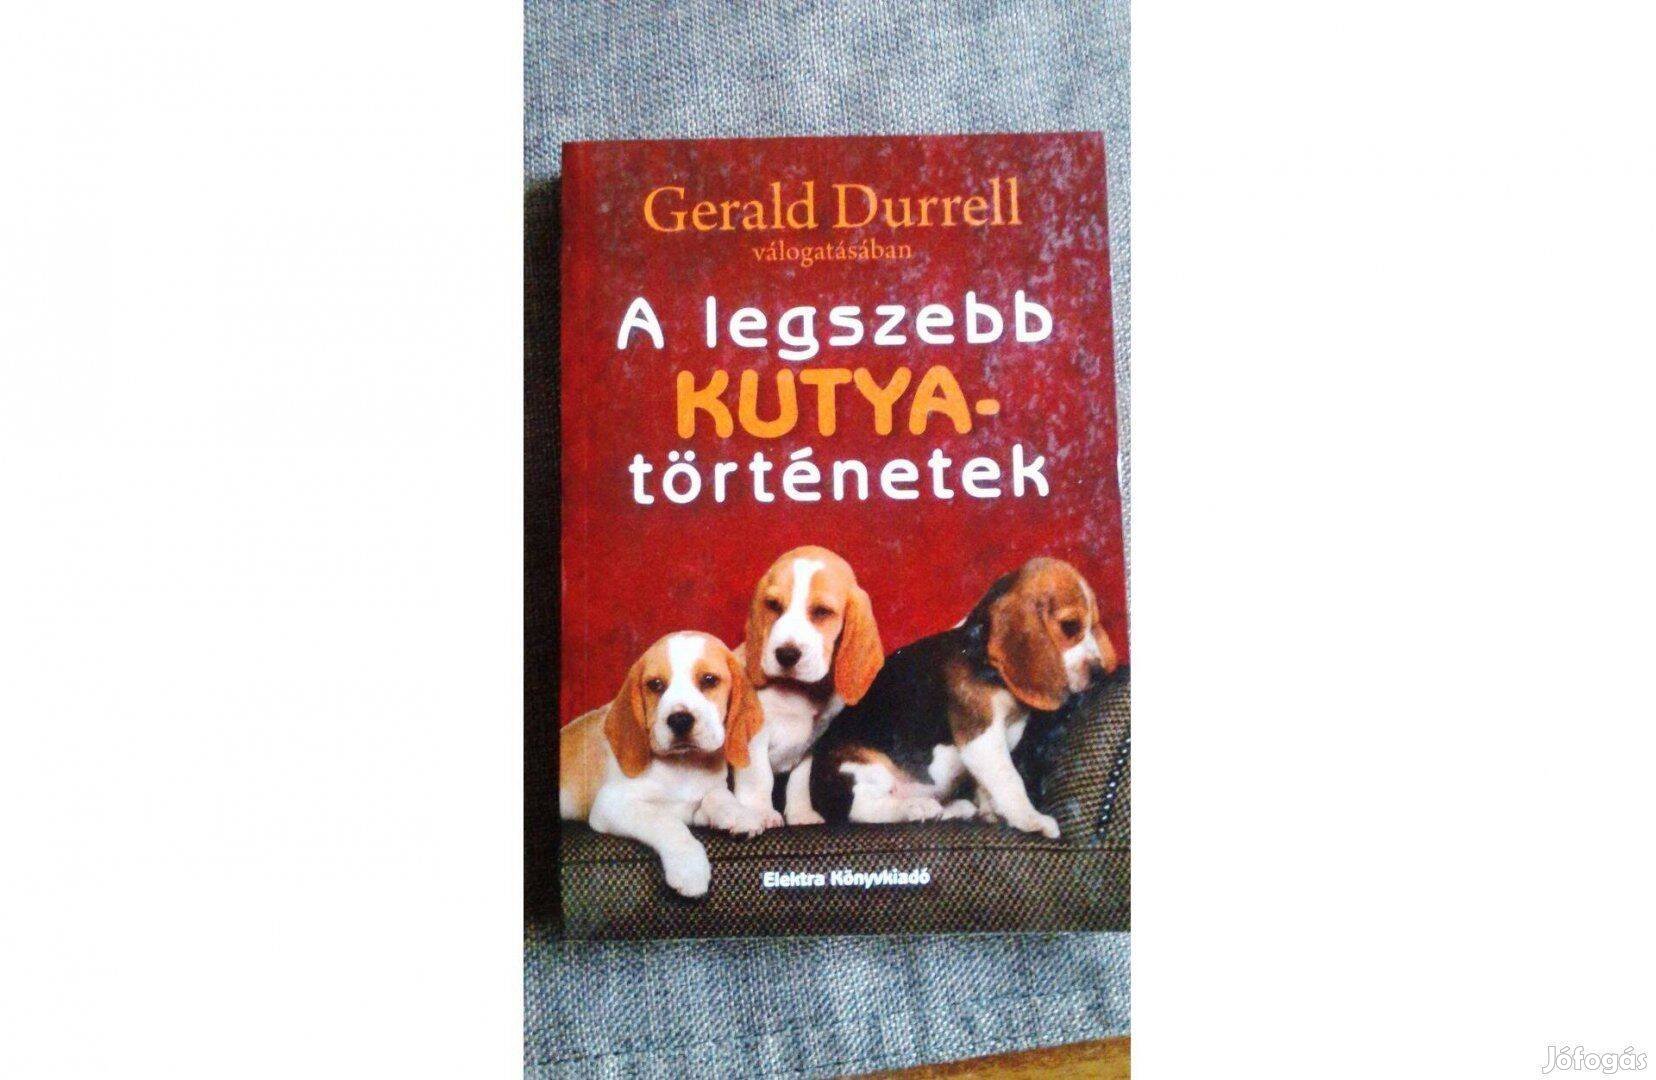 A legszebb kutyatörténetek (Gerald Durrel)